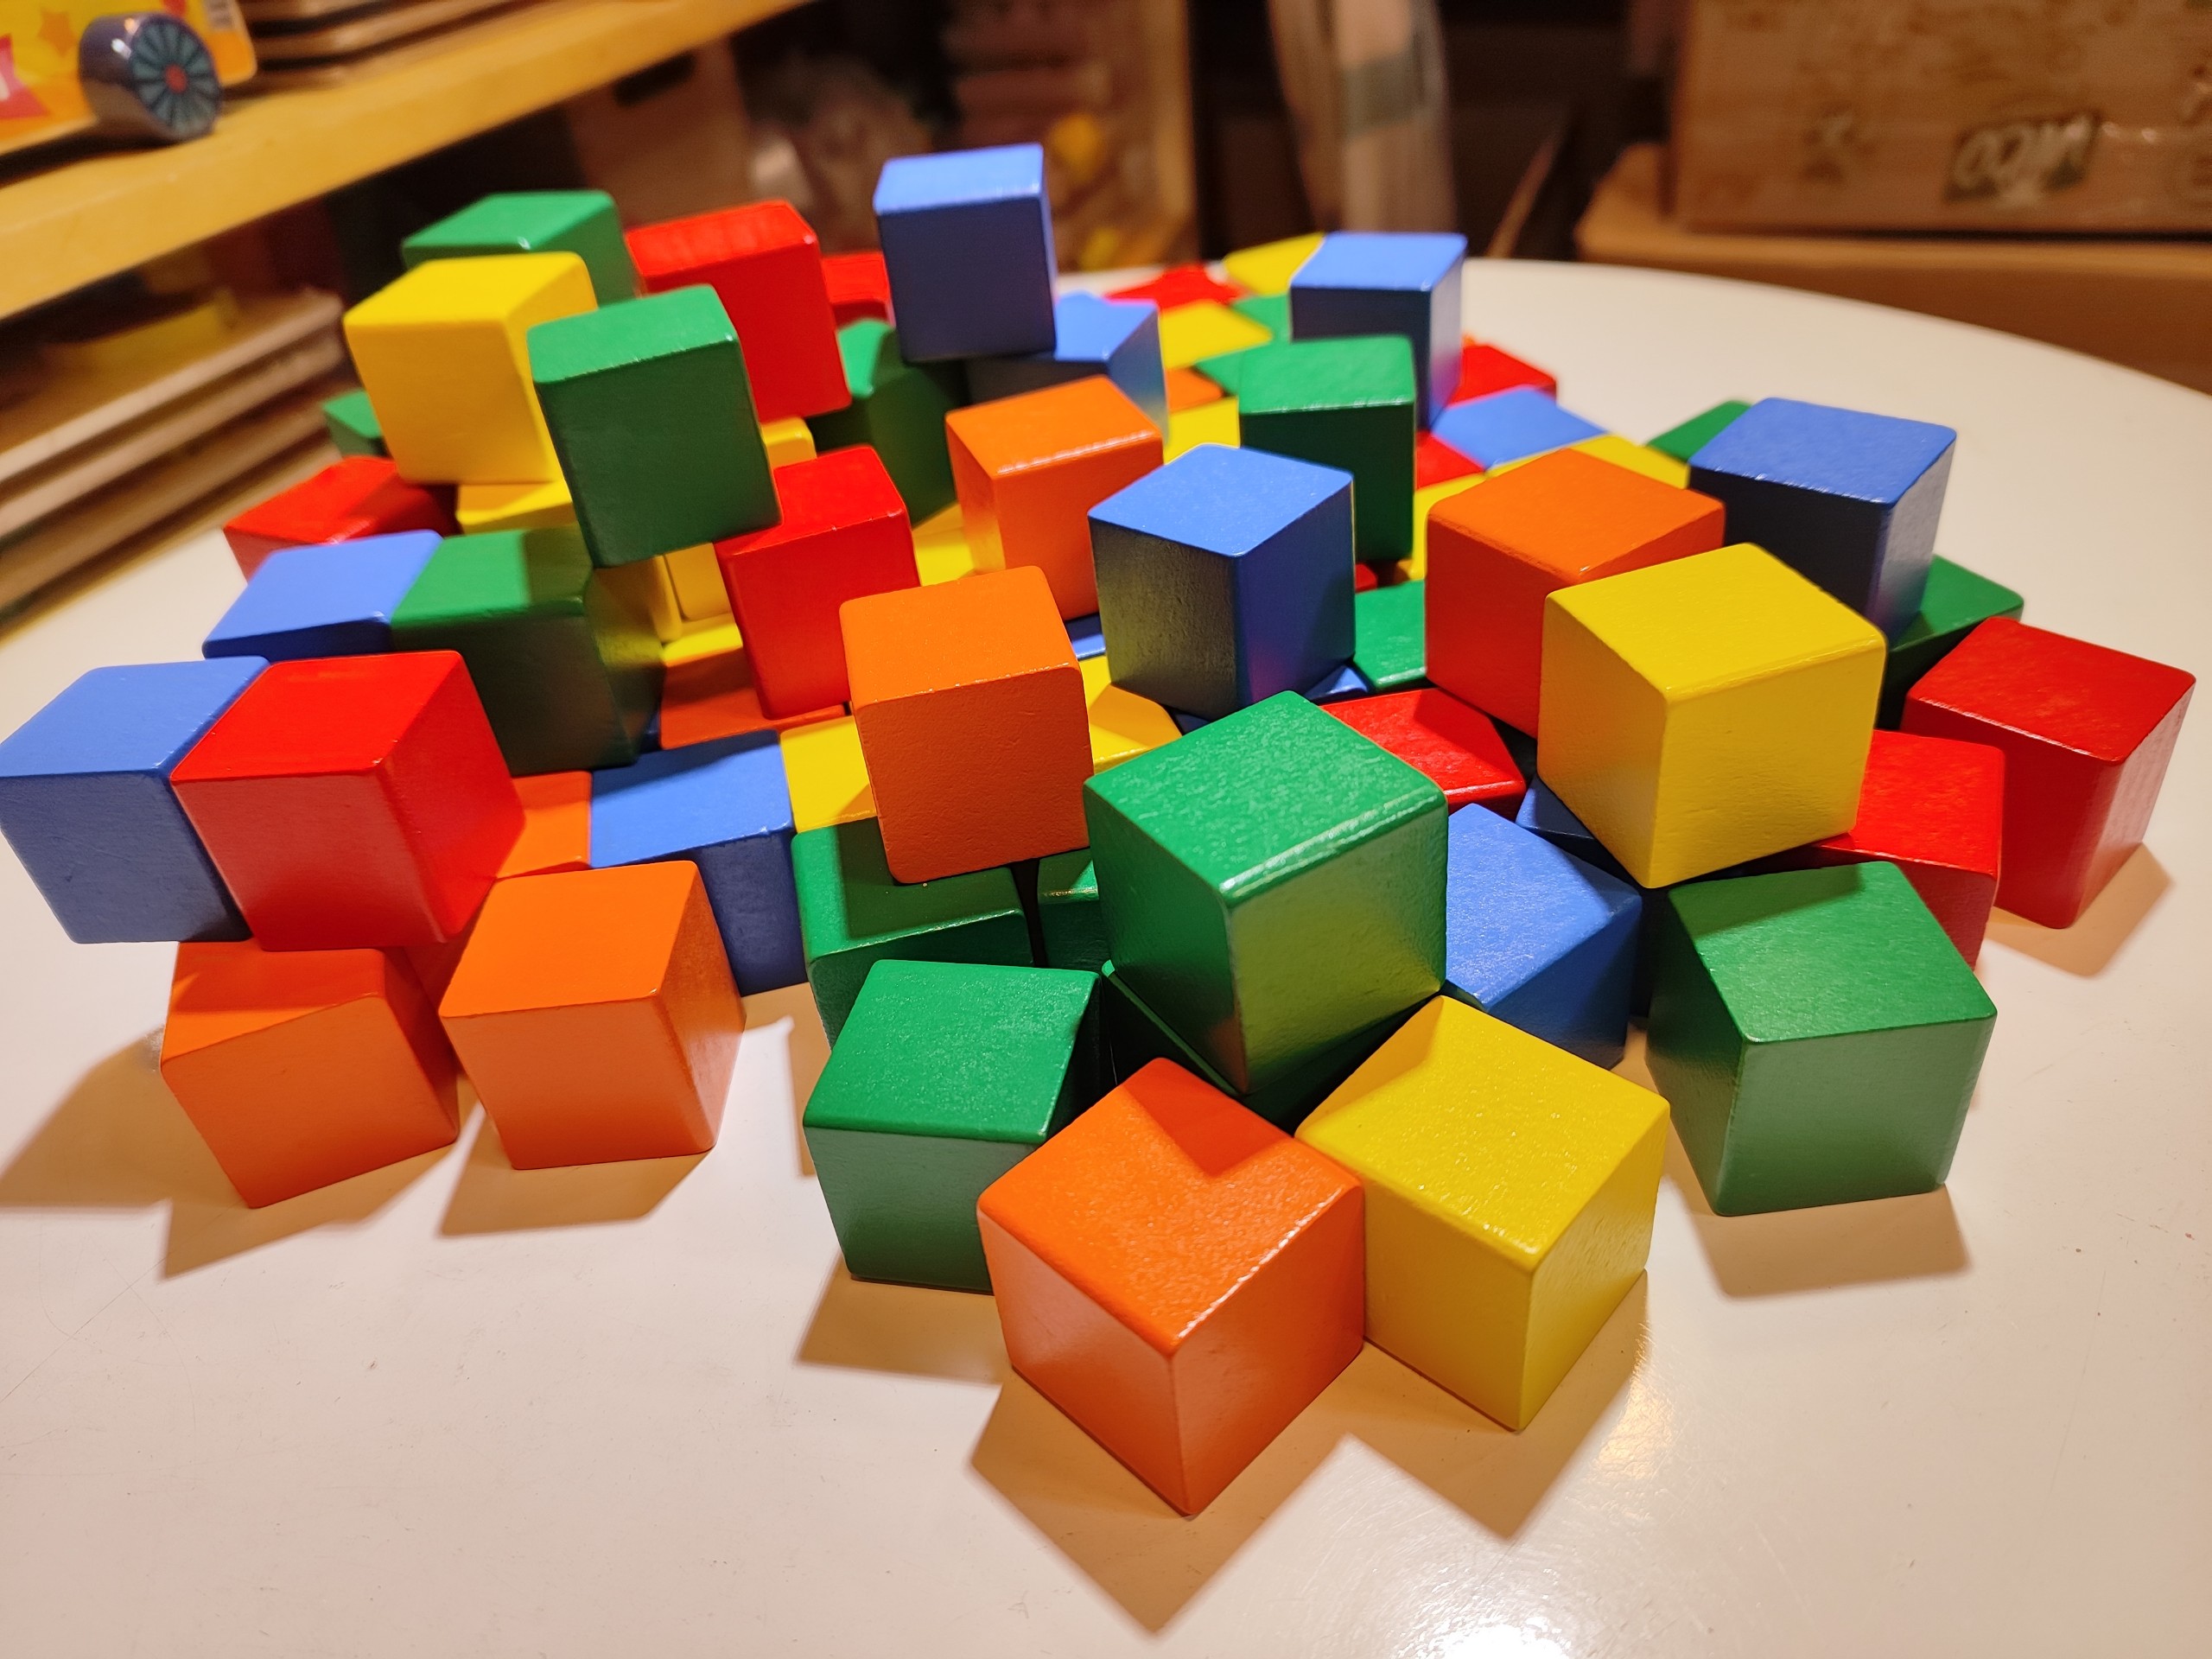 100 khối vuông gỗ màu 3 cm xếp hình đa năng chơi sáng tạo và học toán, vật liệu DIY, khối gỗ decor